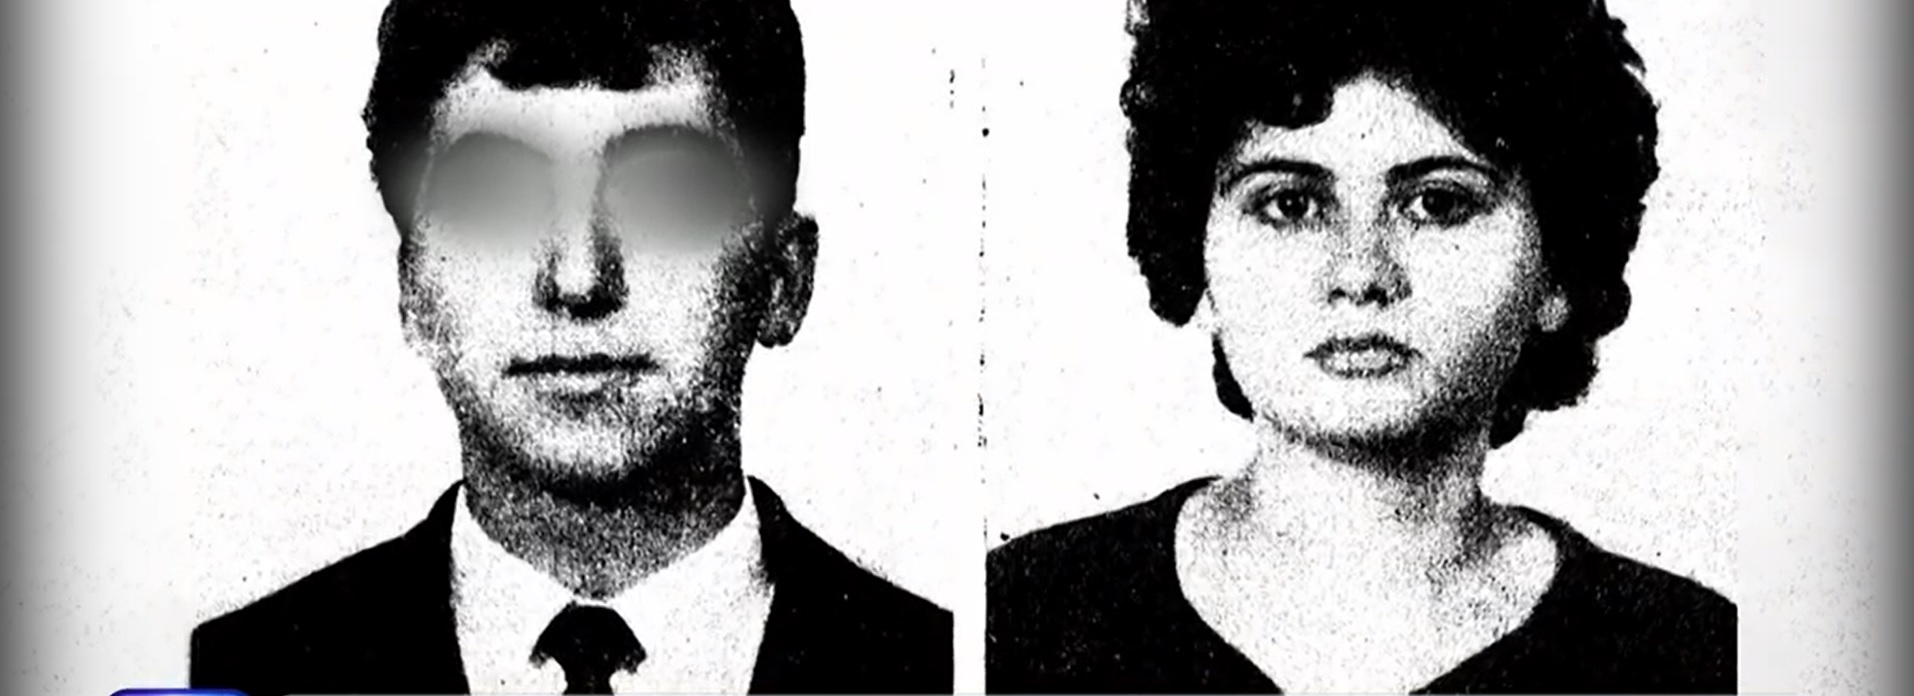 Πάτρα: Το φονικό στην οικογένεια Πισπιρίγκου το 1965 που «σημάδεψε» τη Ρούλα